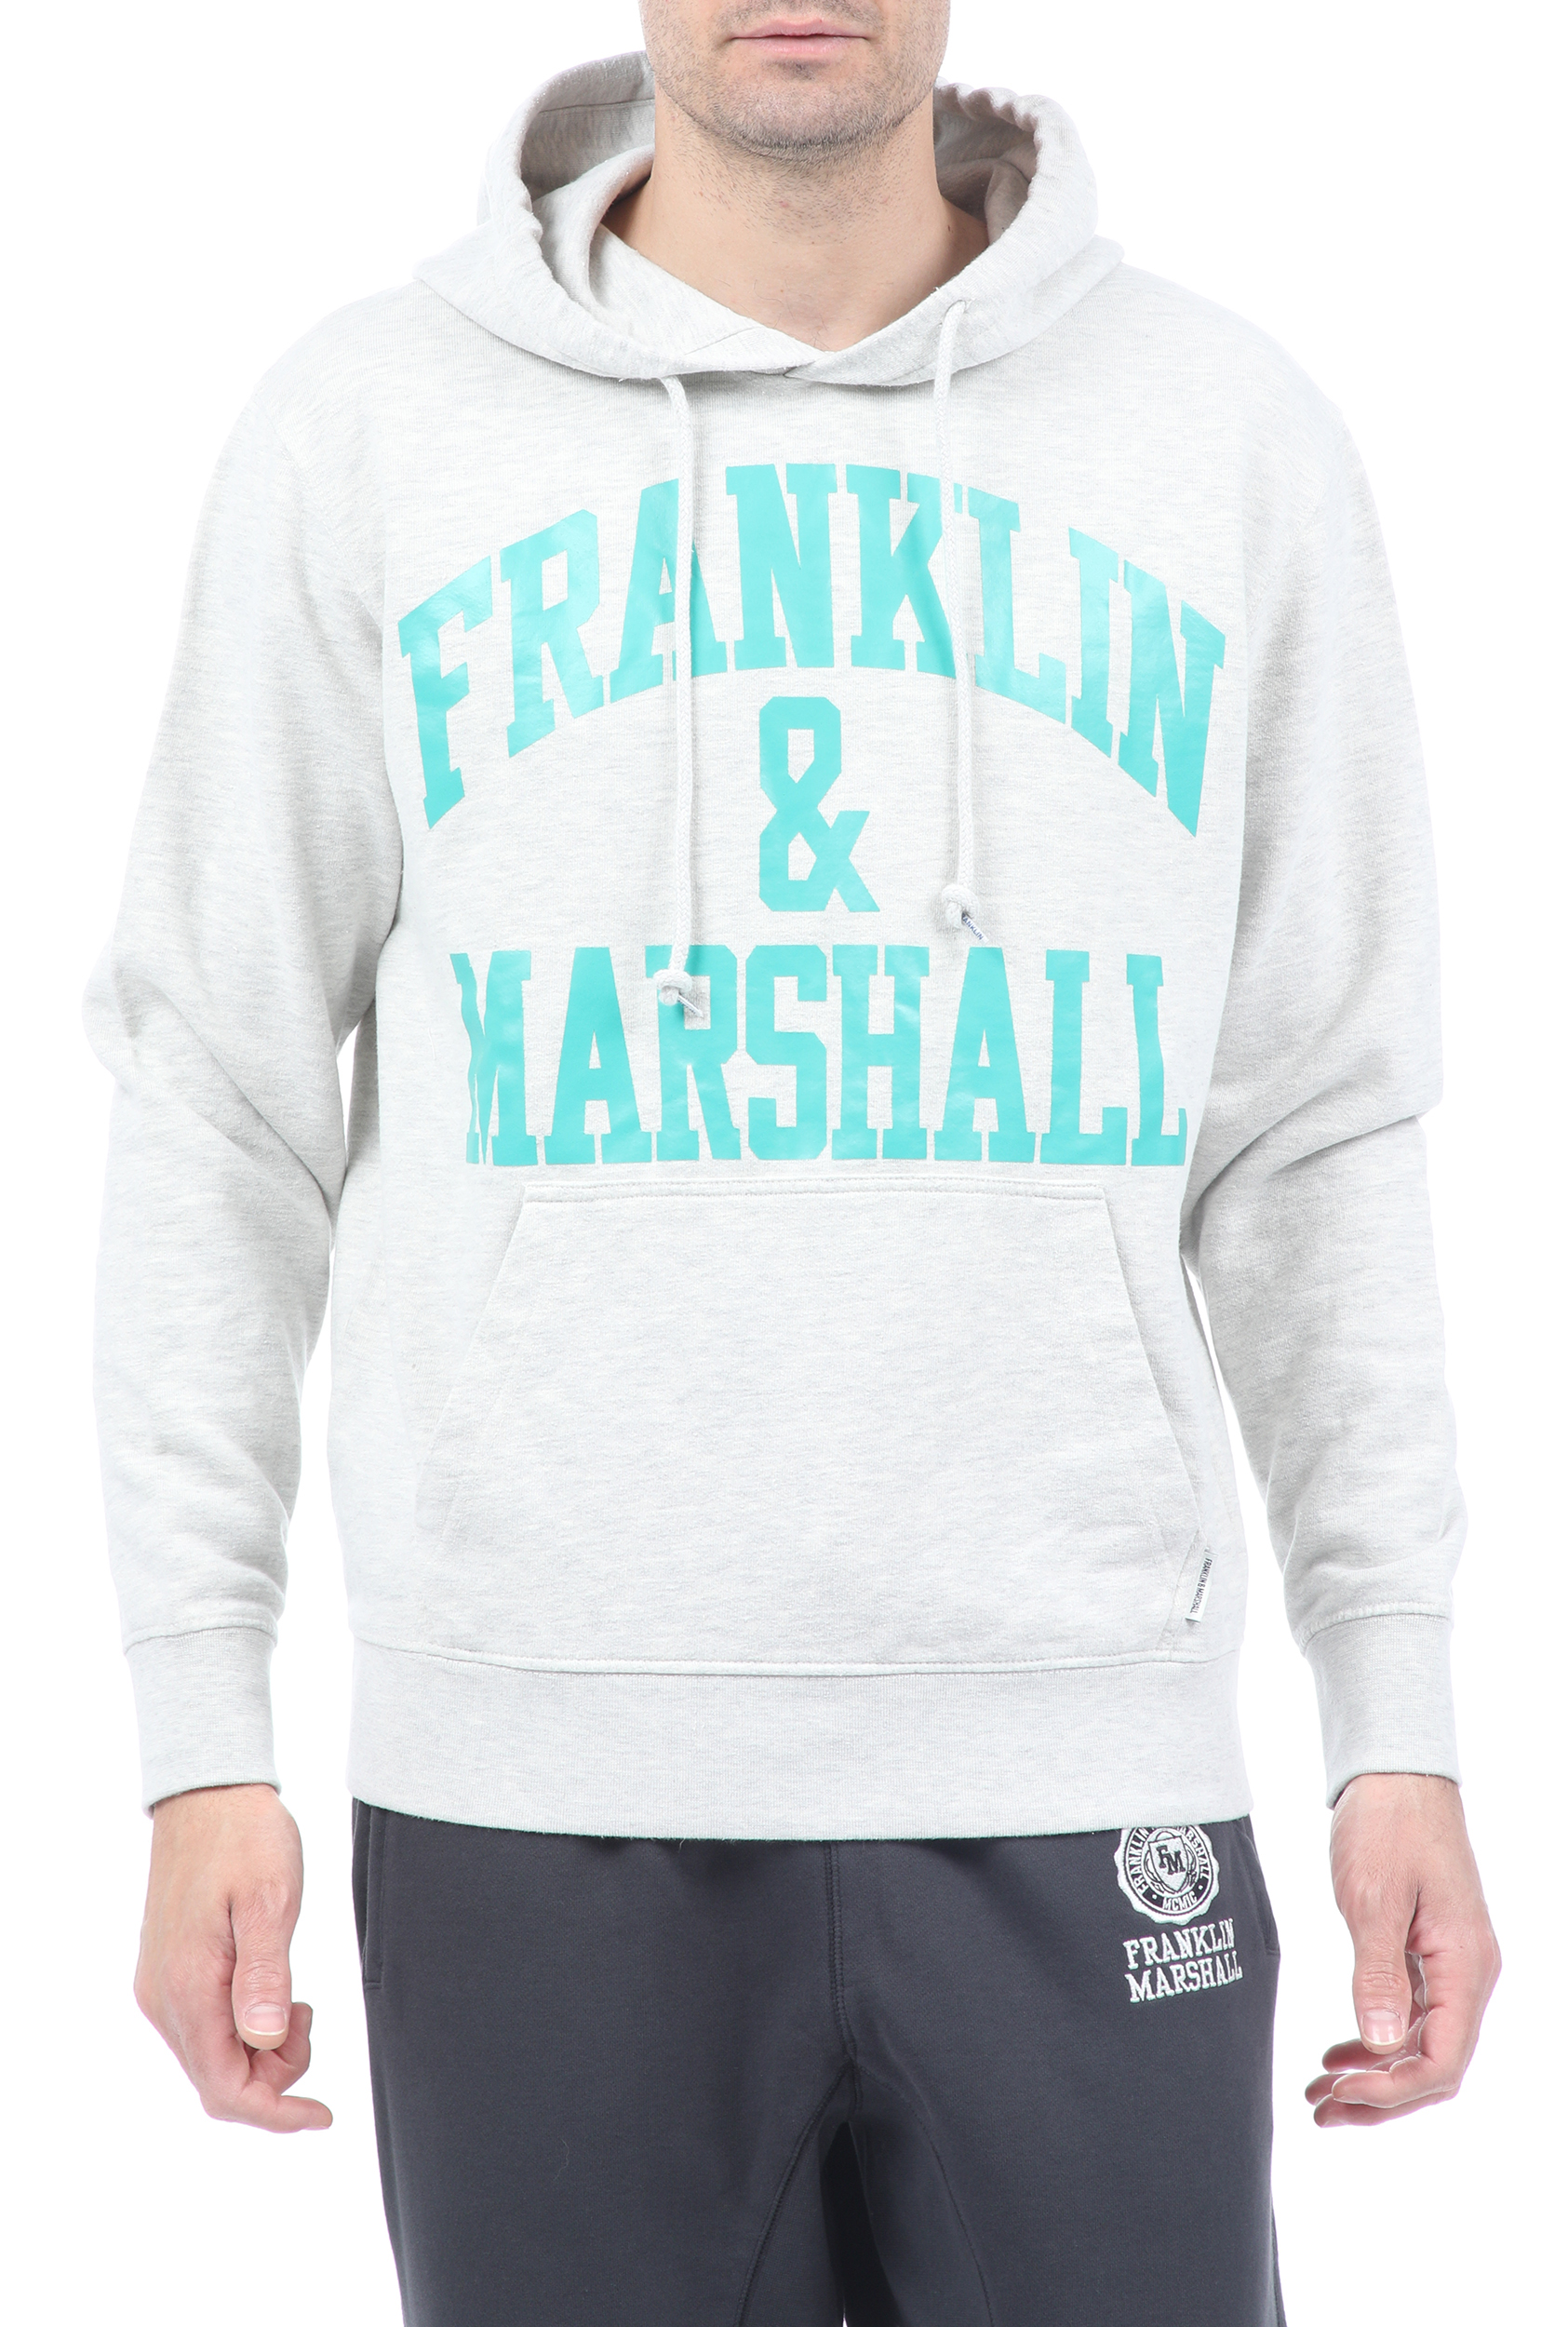 Ανδρικά/Ρούχα/Φούτερ/Μπλούζες FRANKLIN & MARSHALL - Ανδρική φούτερ μπλούζα FRANKLIN & MARSHALL γκρι μπλε